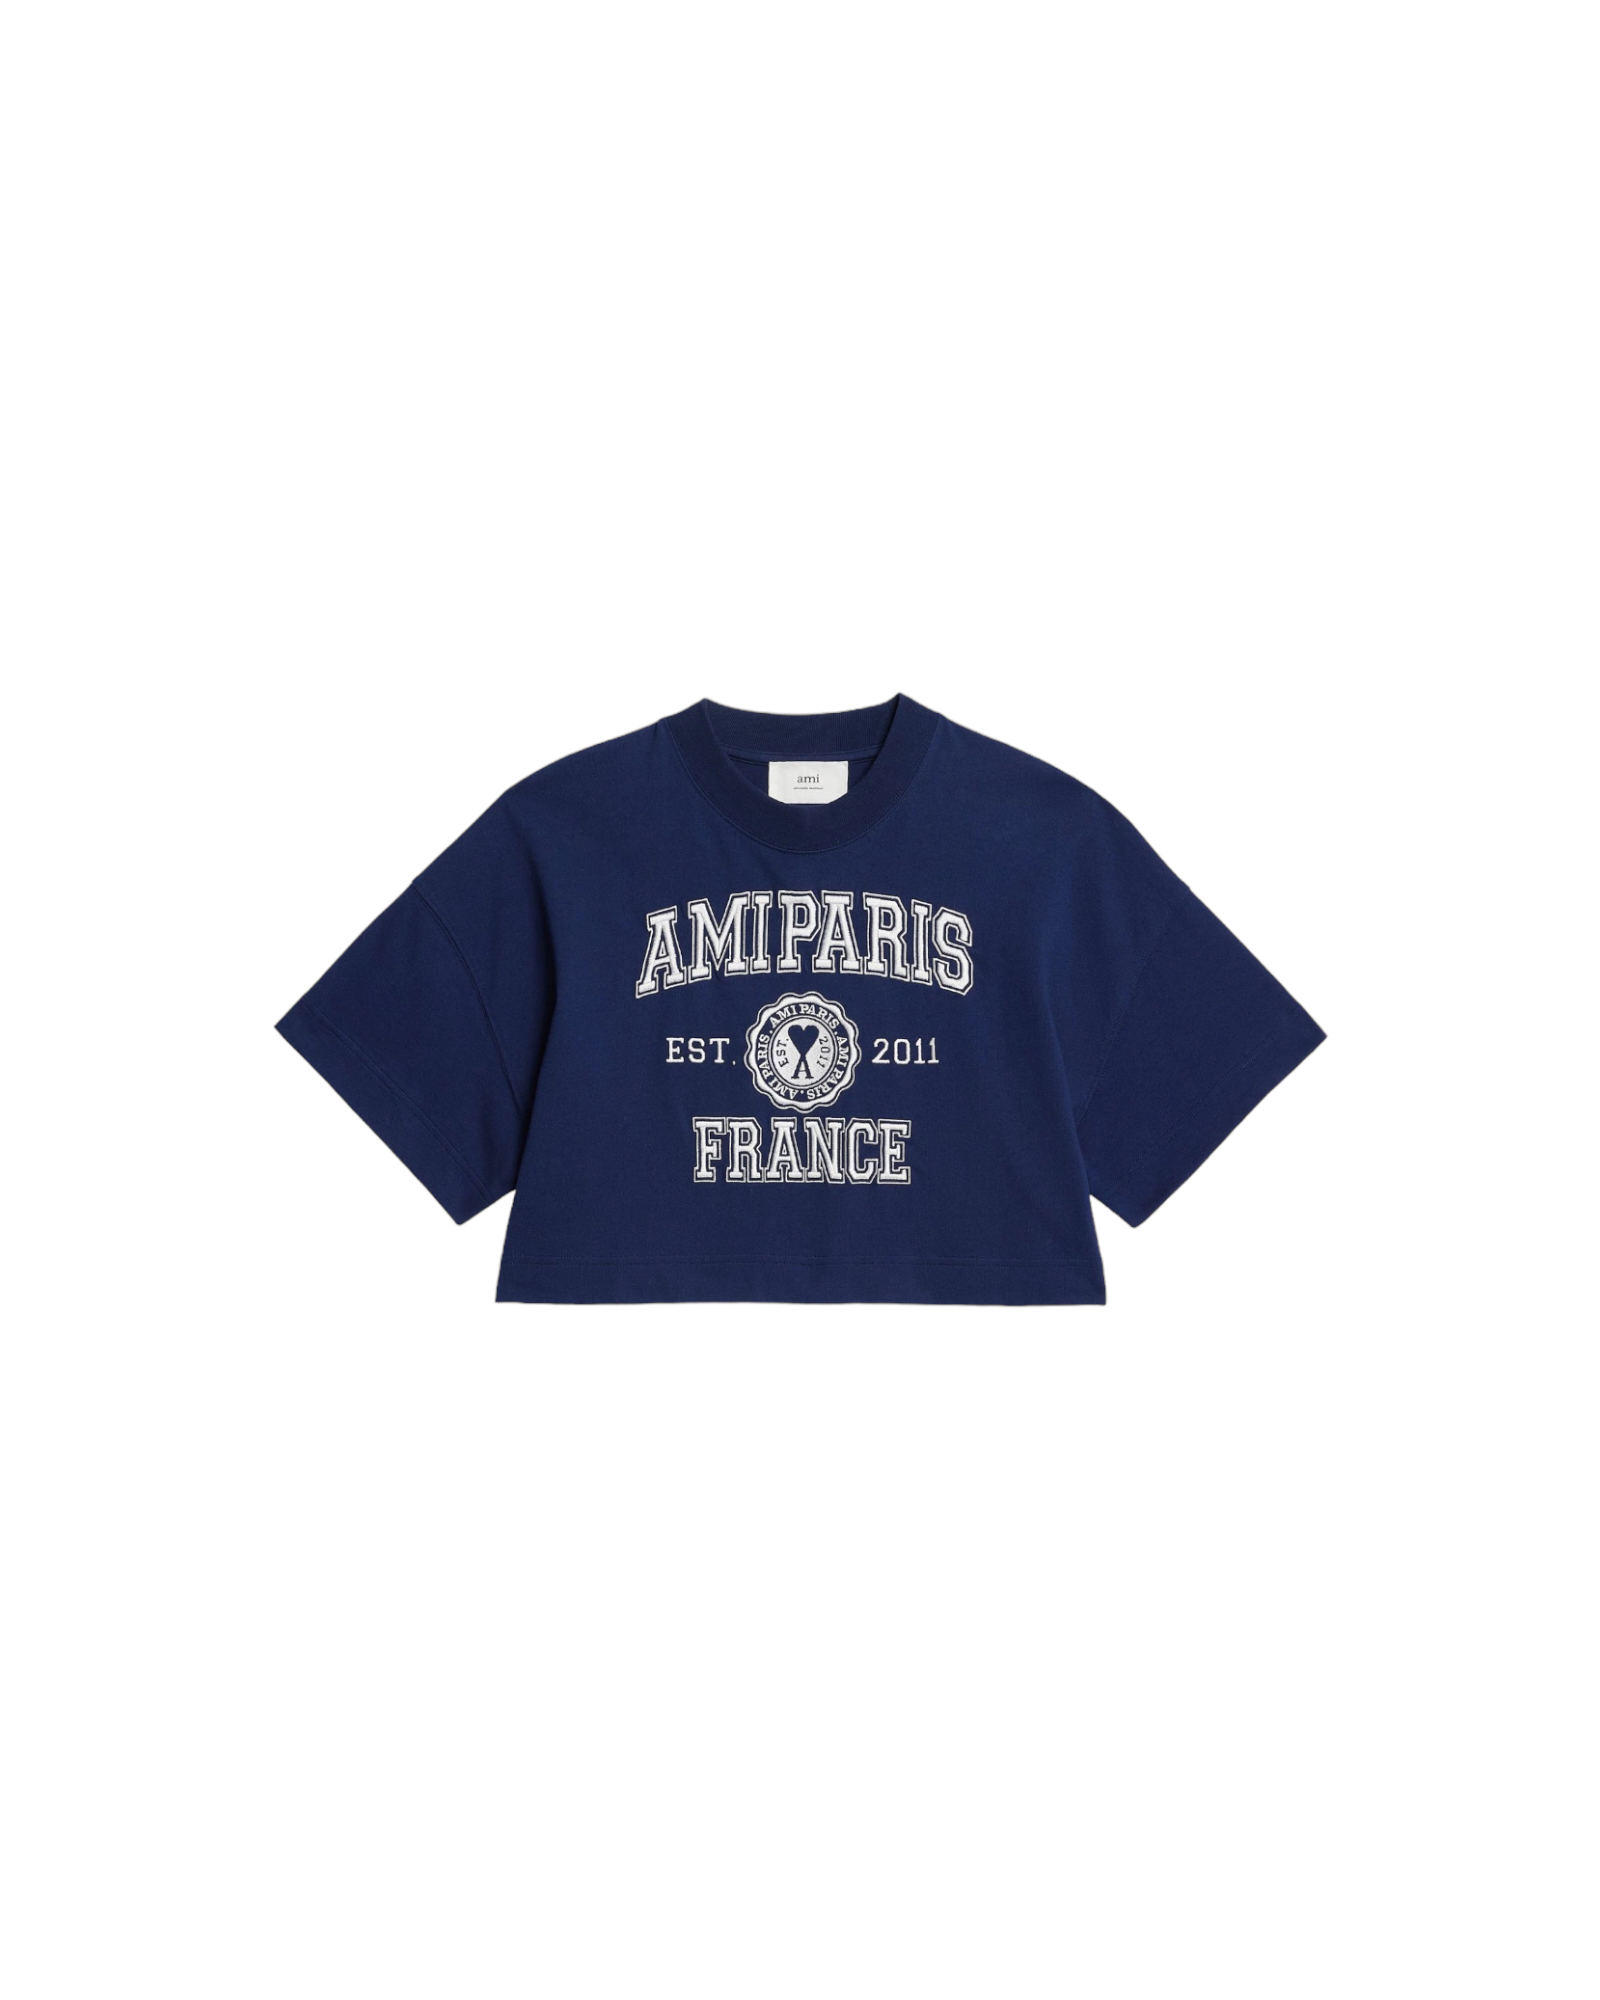 Cropped-T-Shirt Cœur Sacré  AMI PARIS, AMI PARIS, FTS009.726491